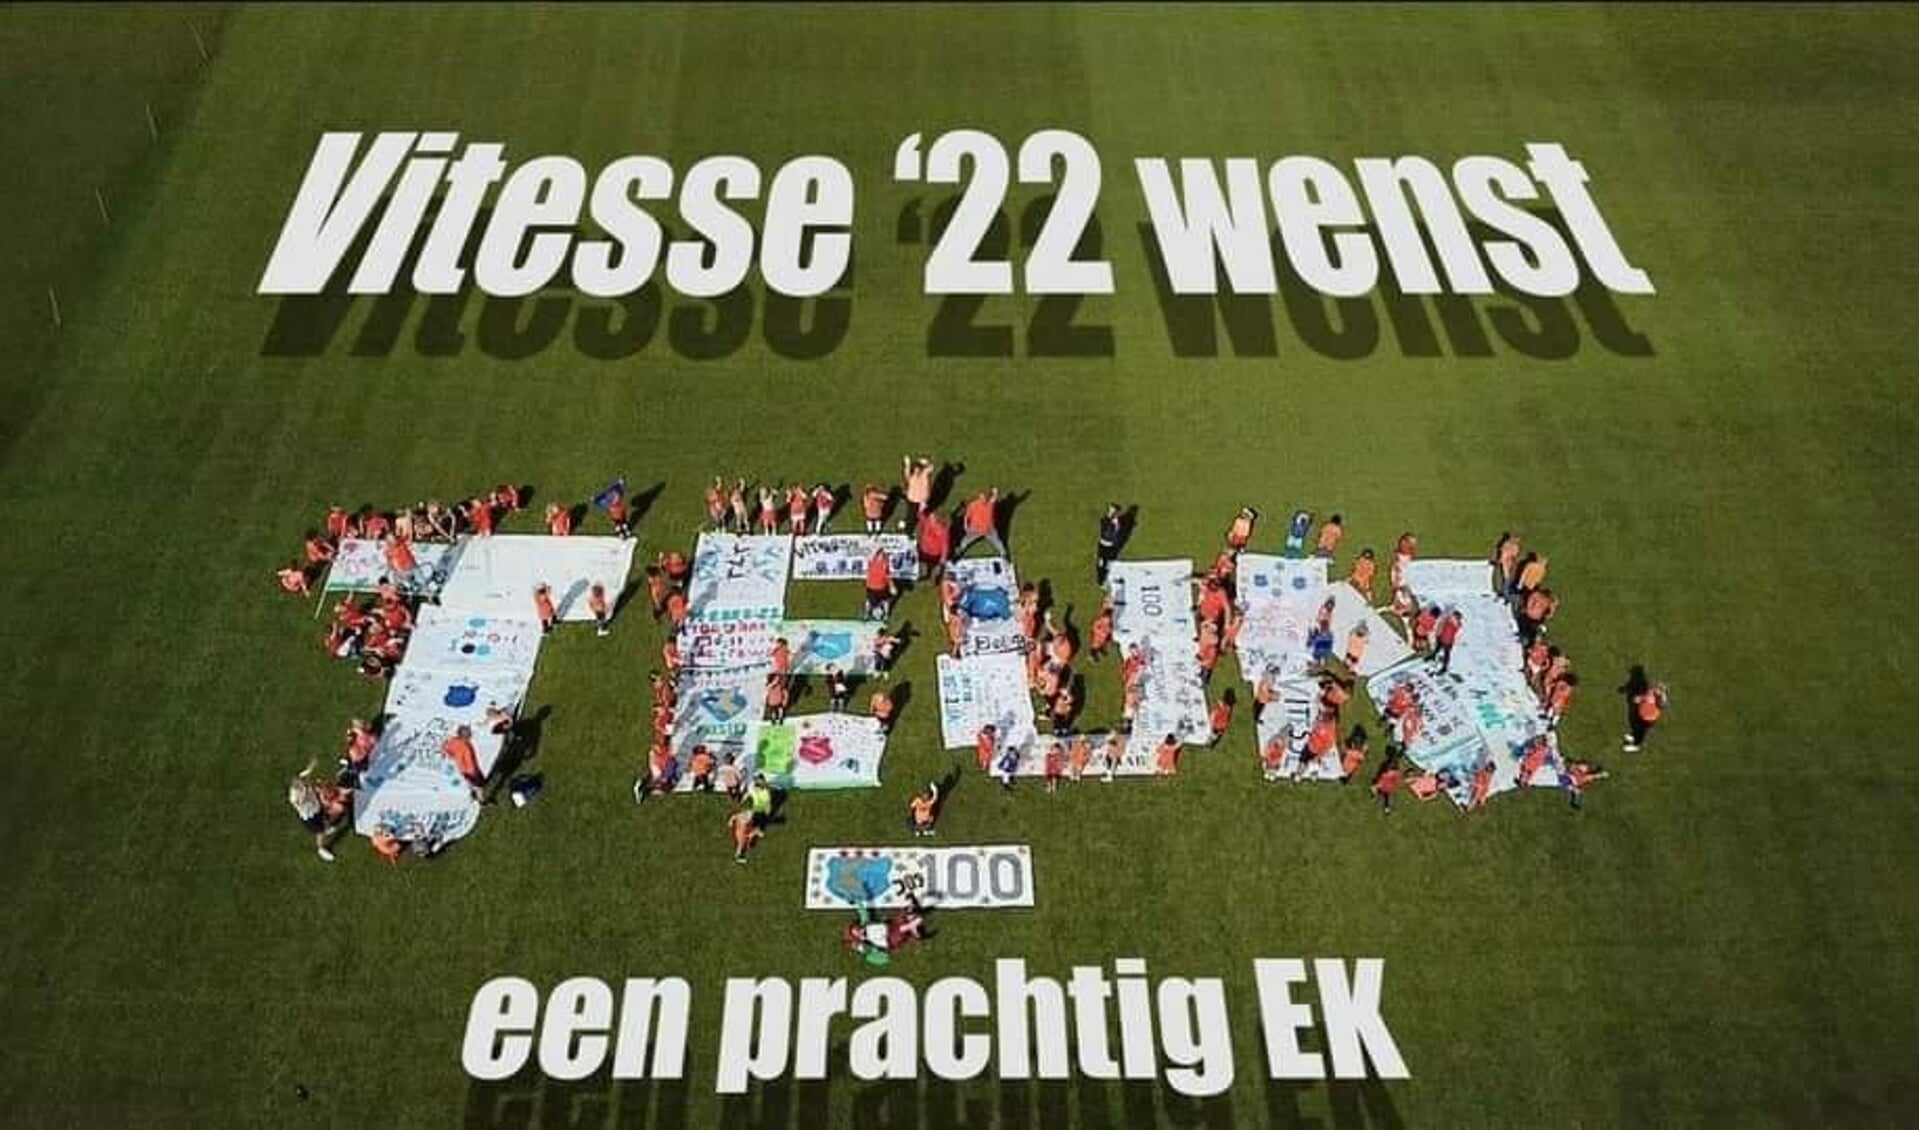 Leden van Vitesse ’22 wensen Teun Koopmeiners veel succes en plezier tijdens het EK!